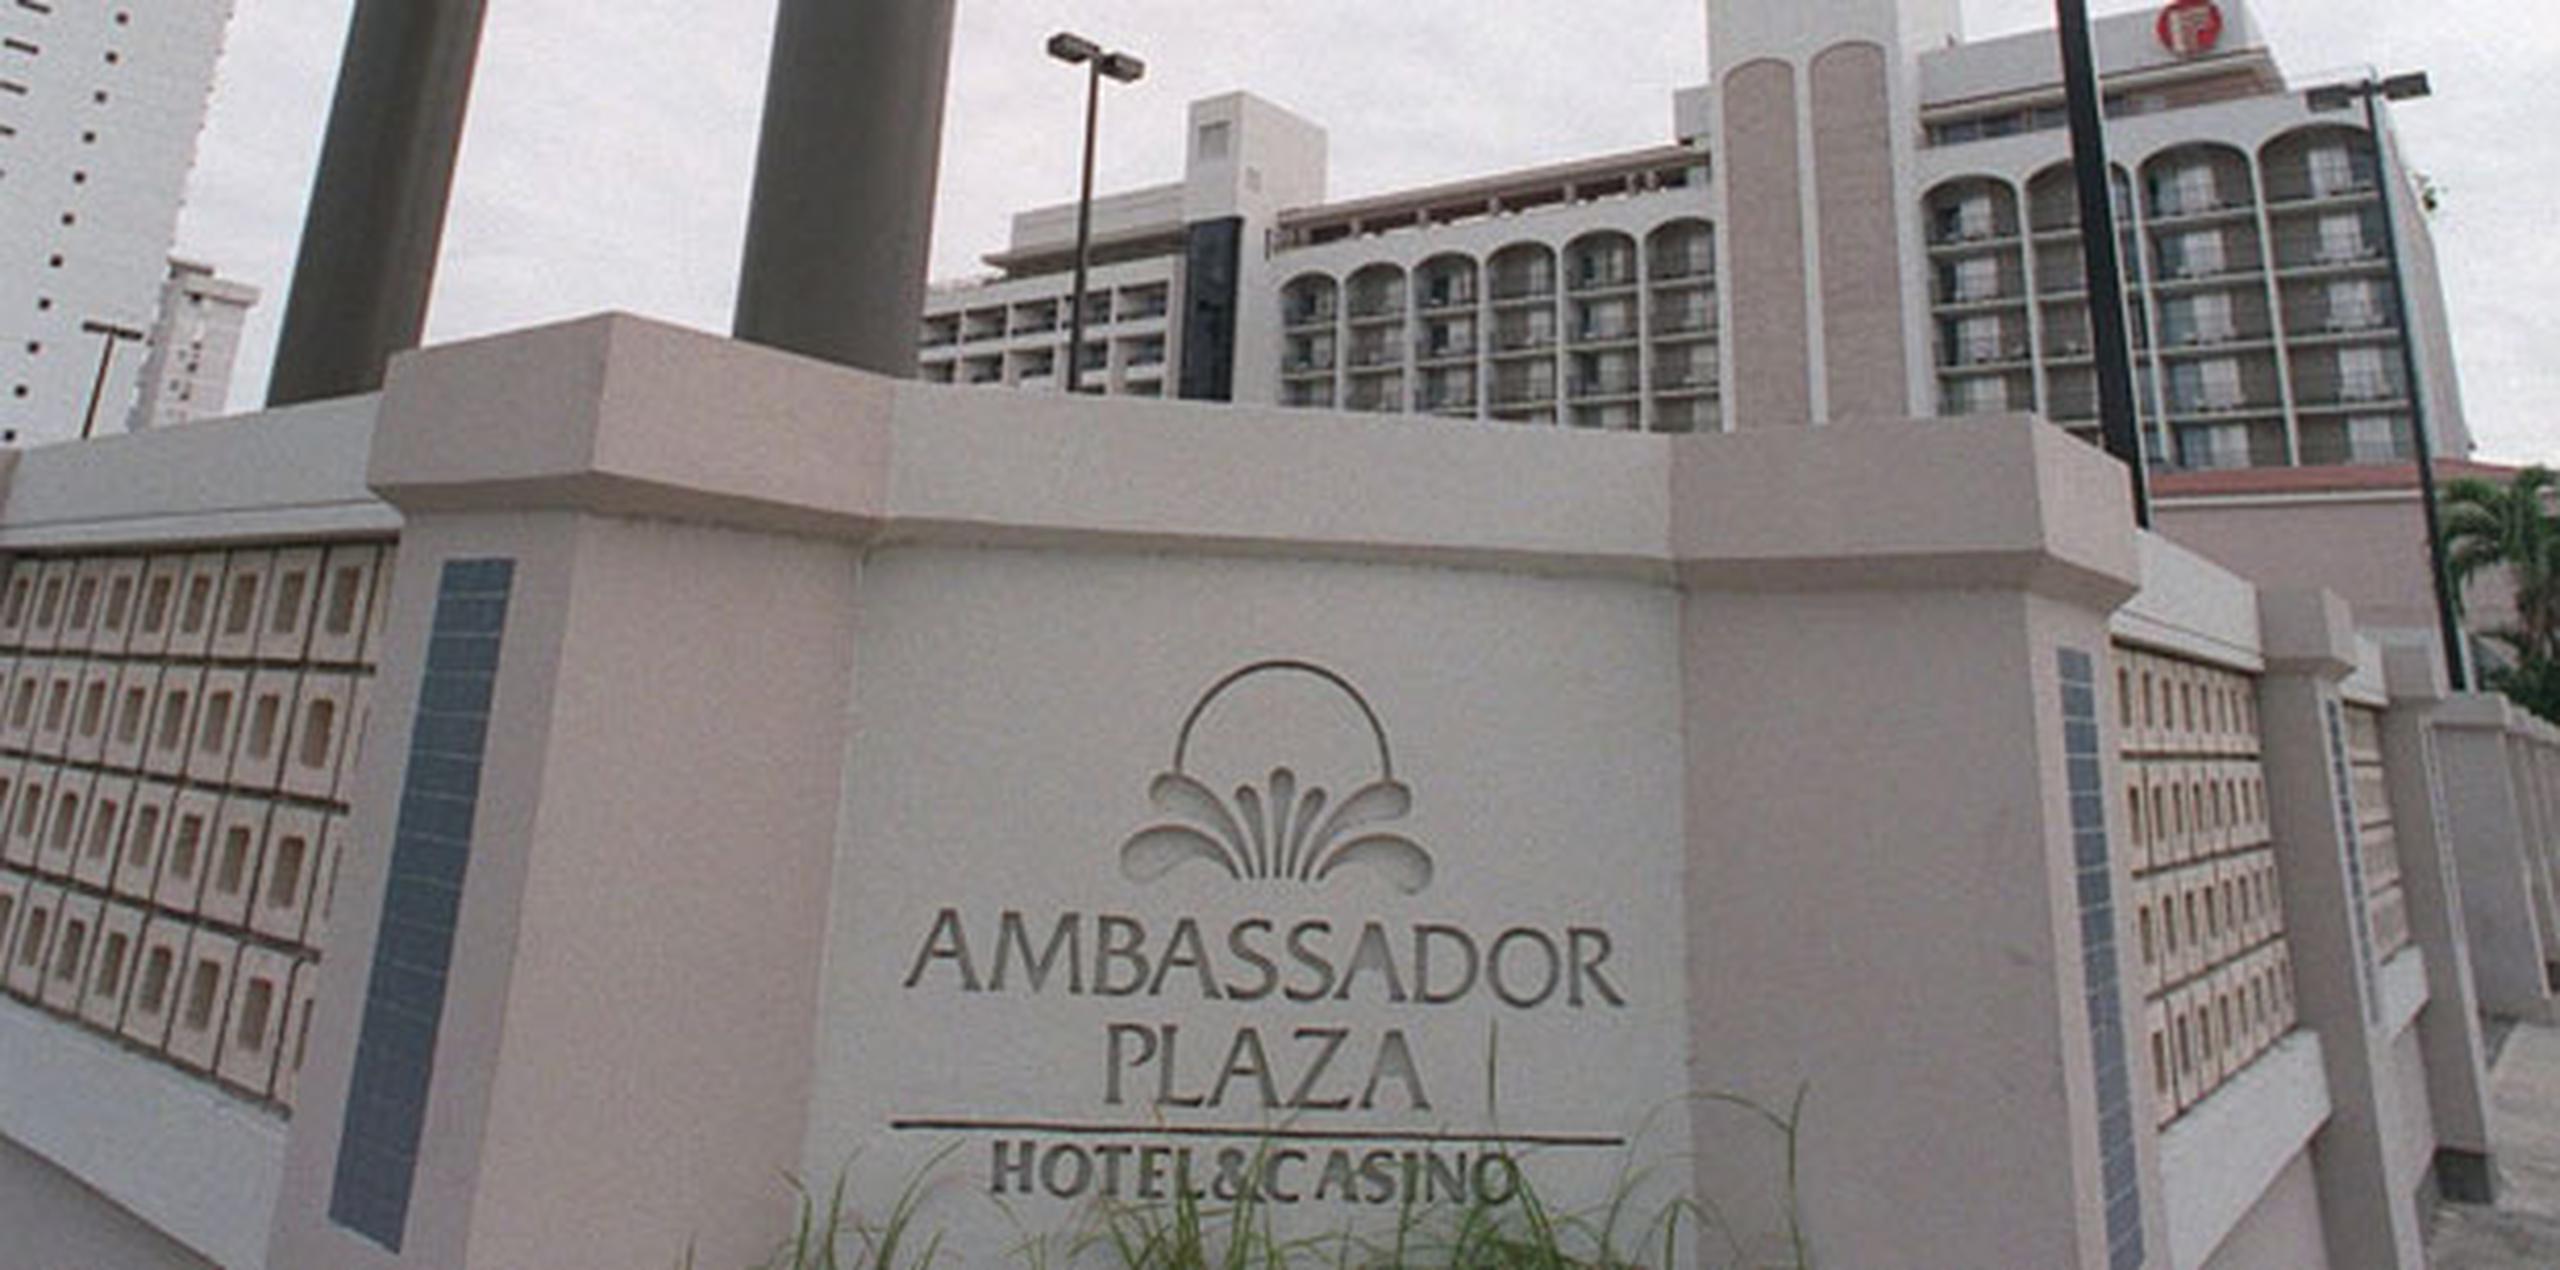 El futuro hotel, que se espera sea inaugurado en el primer trimestre de 2017, ocupa las instalaciones del Radisson Ambassador Plaza & Casino, que cerró en abril de 2015 por los altos costos operativos. (Archivo)